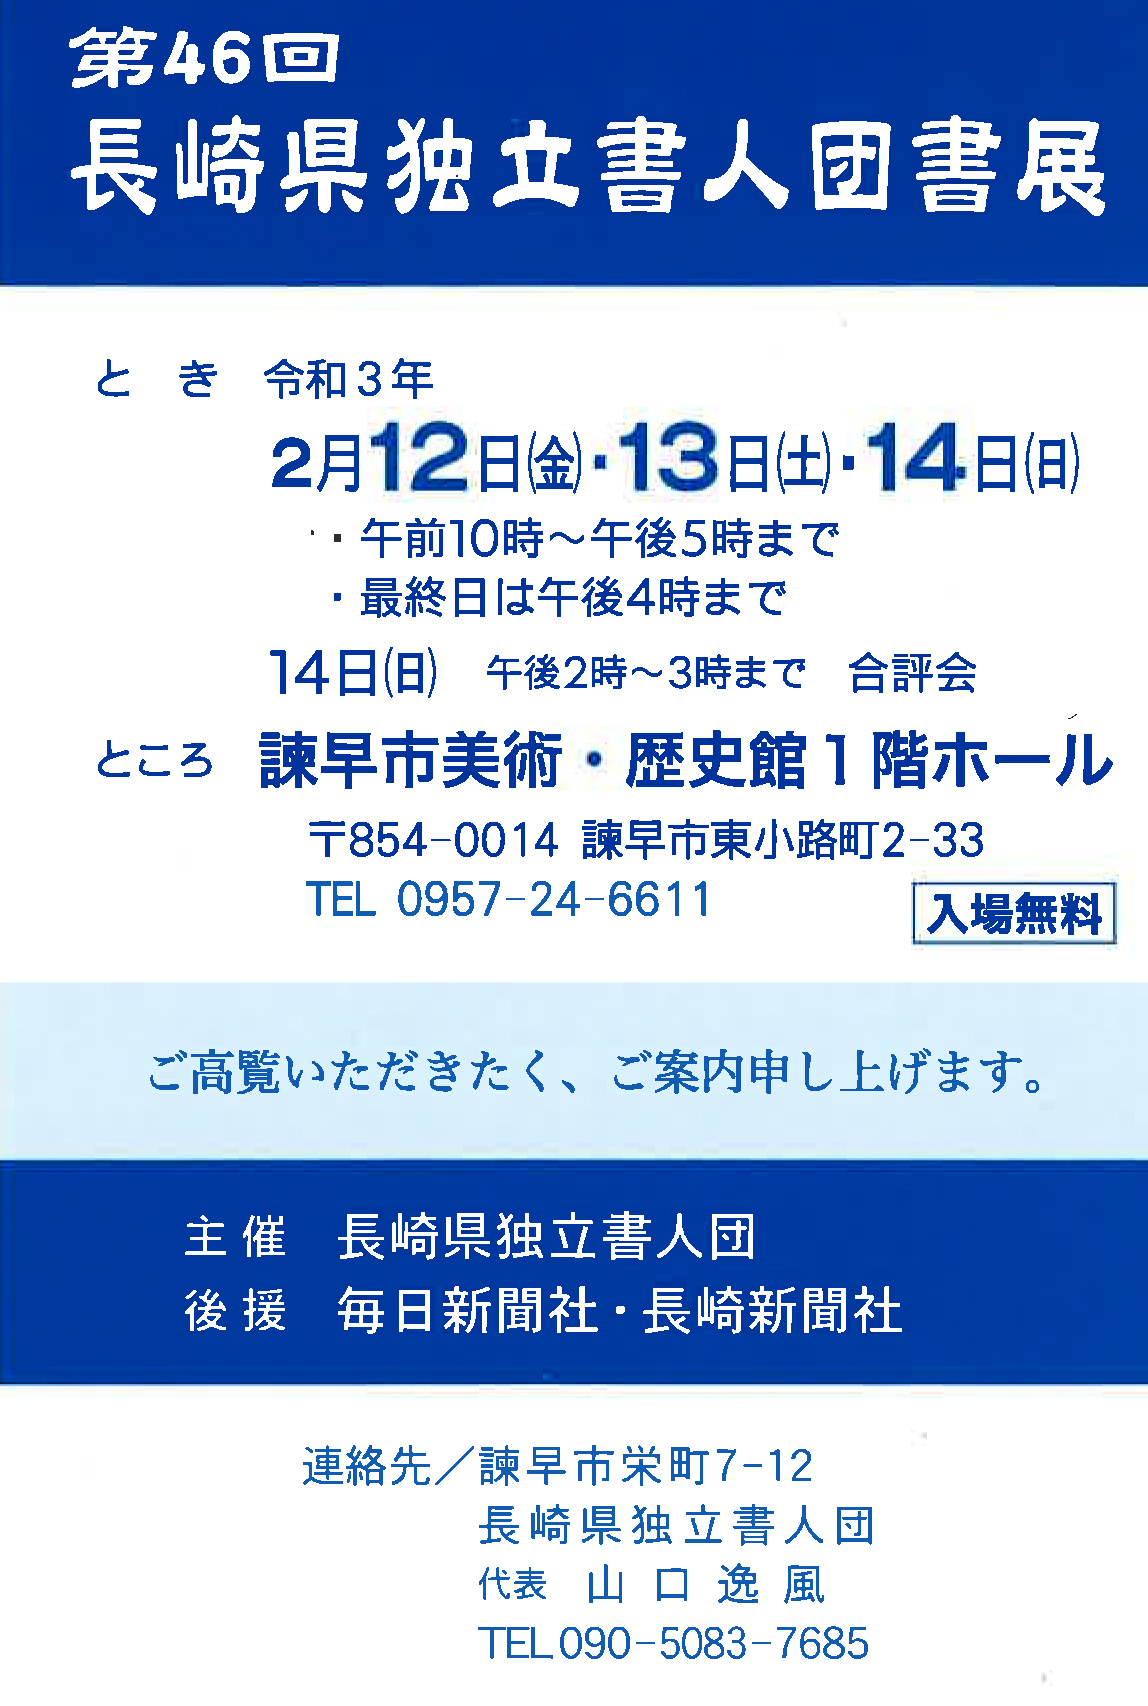 【展覧会情報】第46回長崎県独立書人団書展